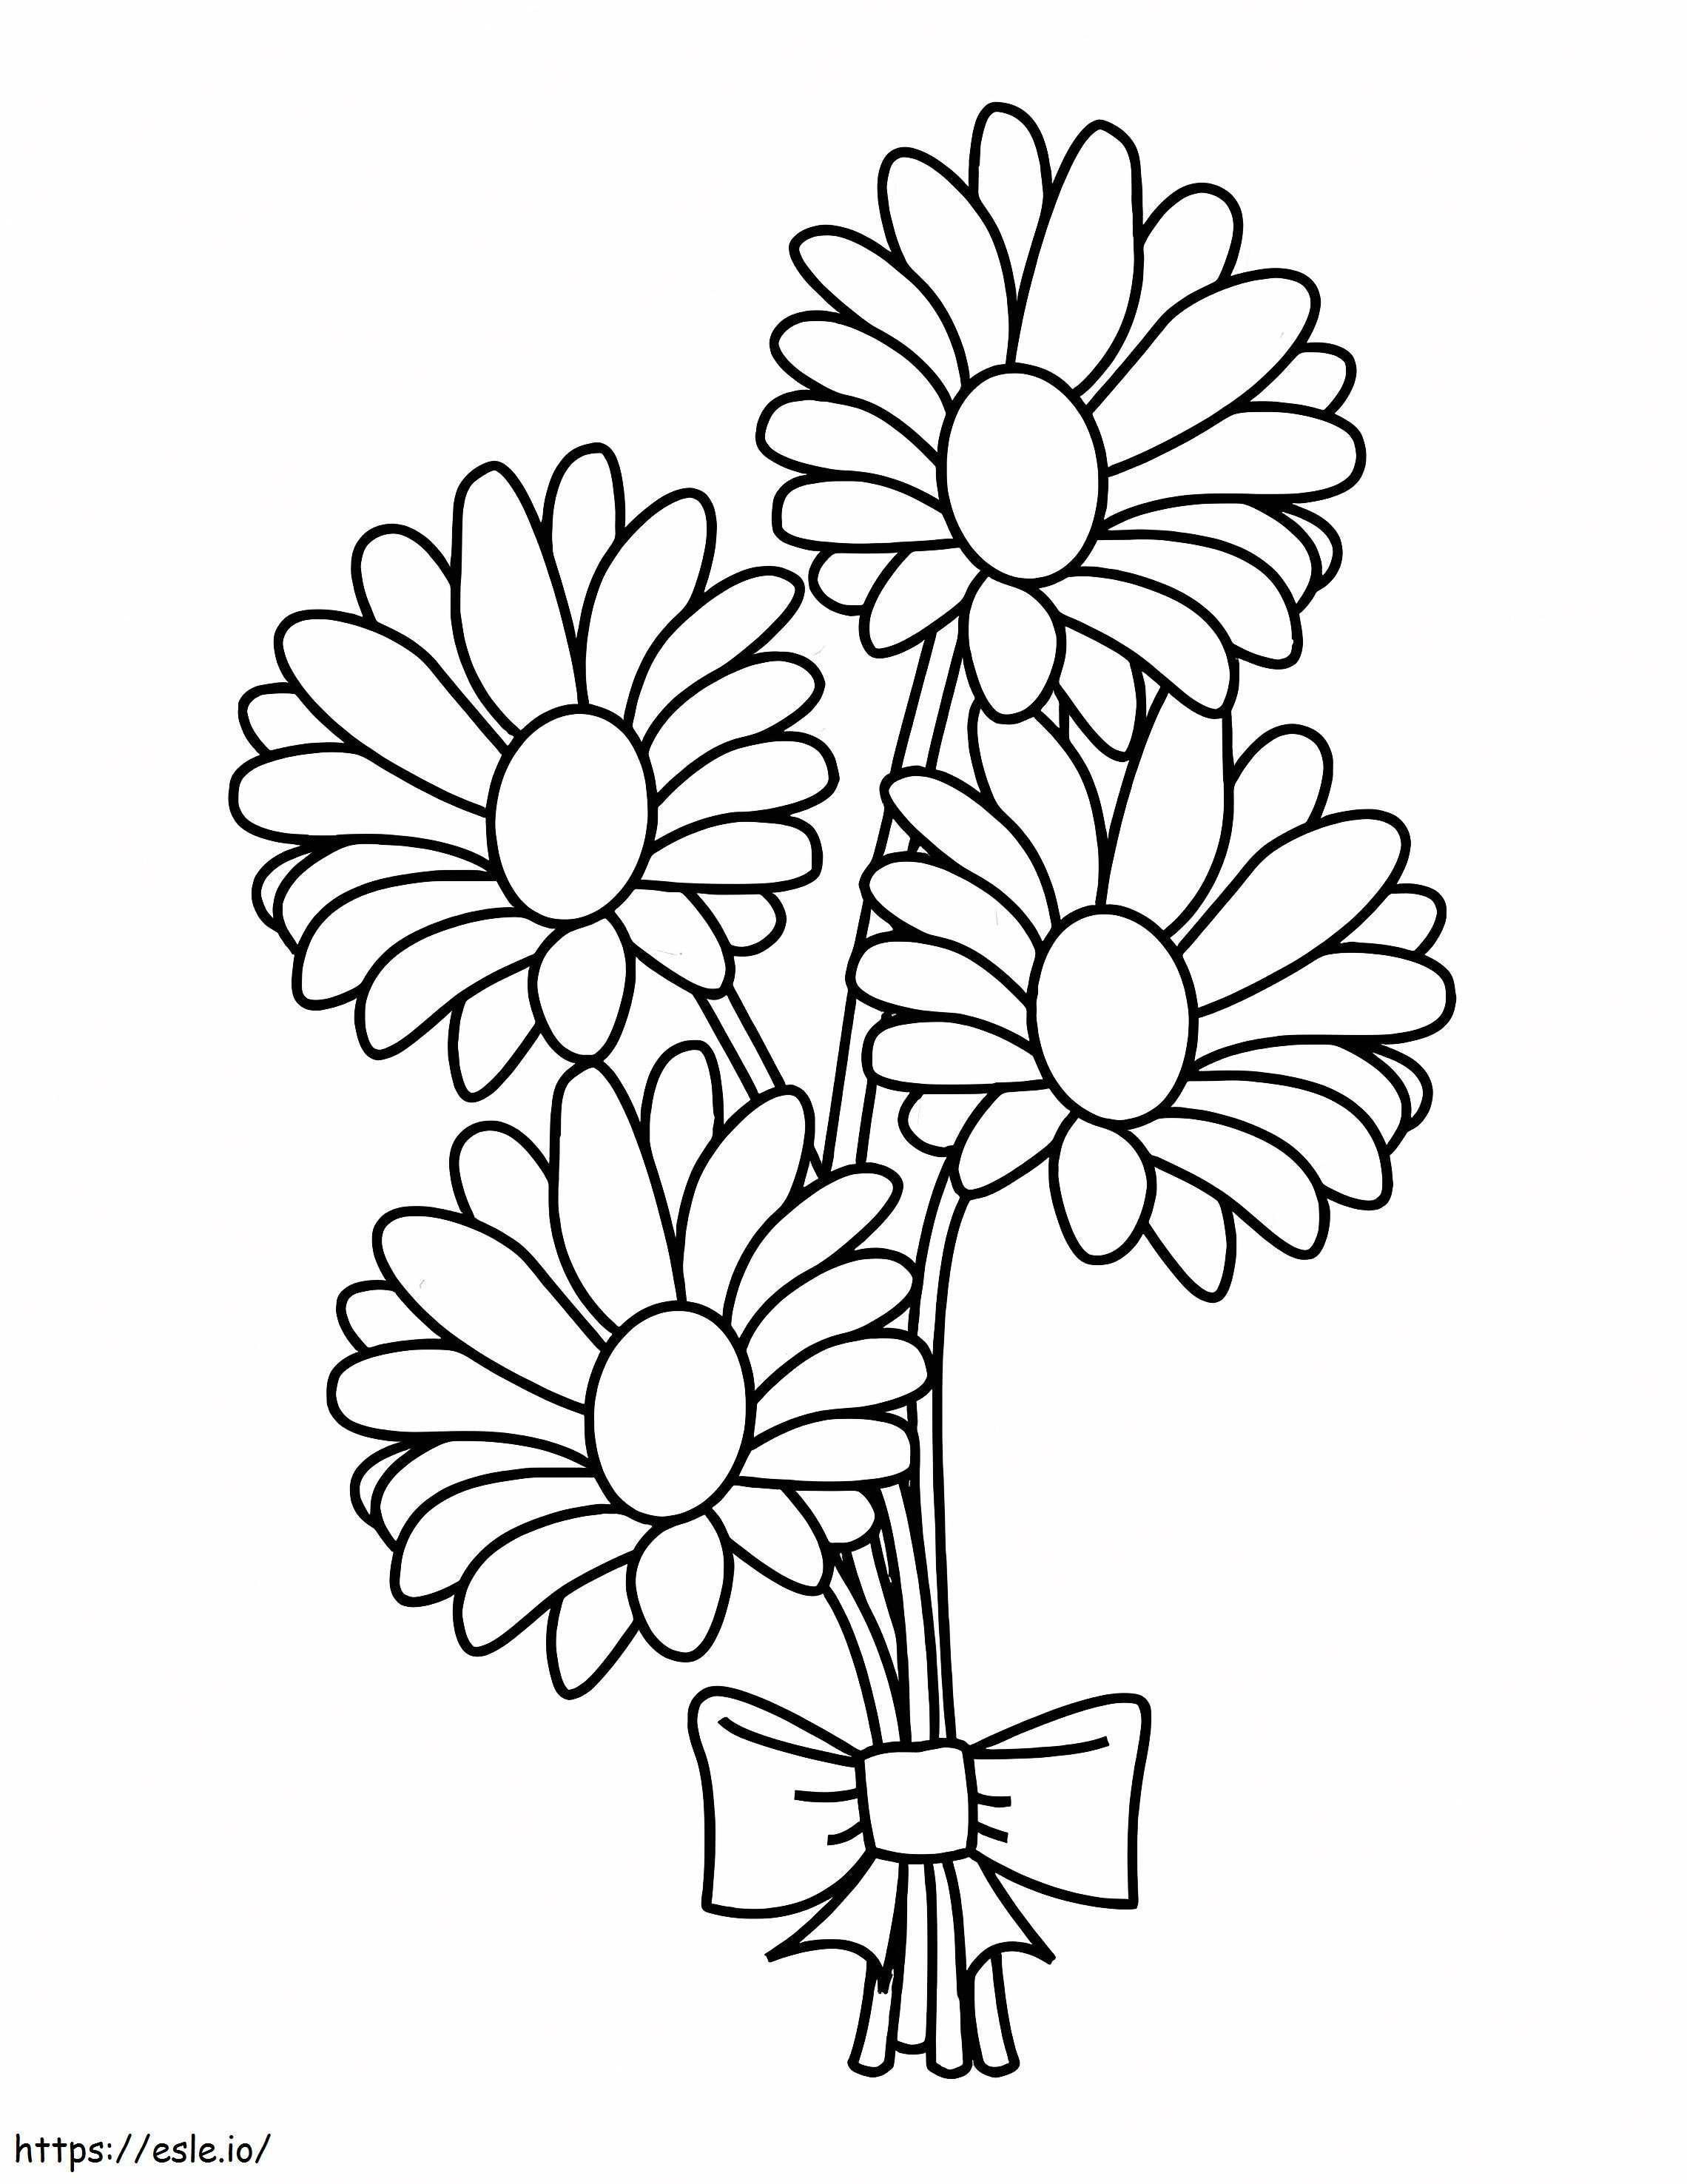 Coloriage Bouquet De Marguerites à imprimer dessin